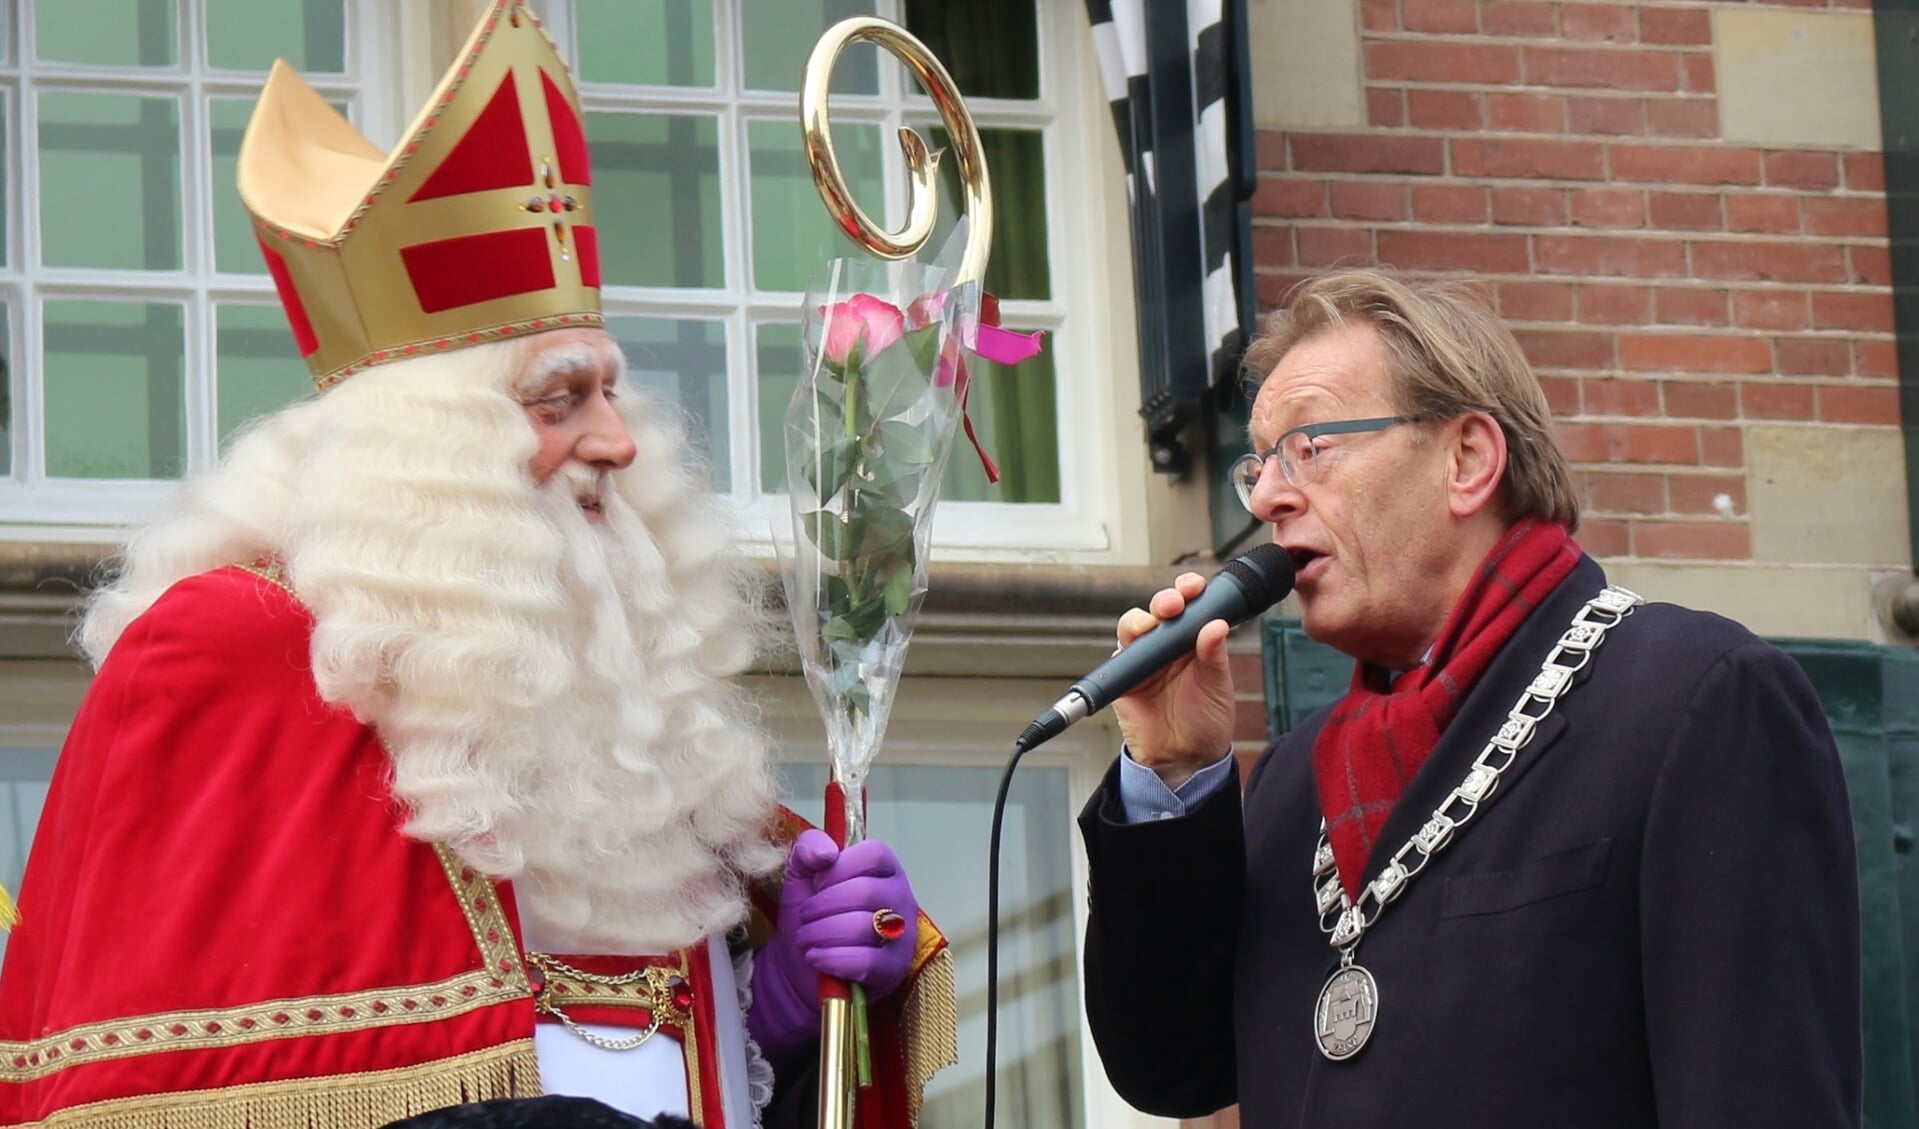 Zien we dit beeld zaterdag weer...? Of verprutsen bandieten de ontvangst van Sinterklaas door de burgemeester?